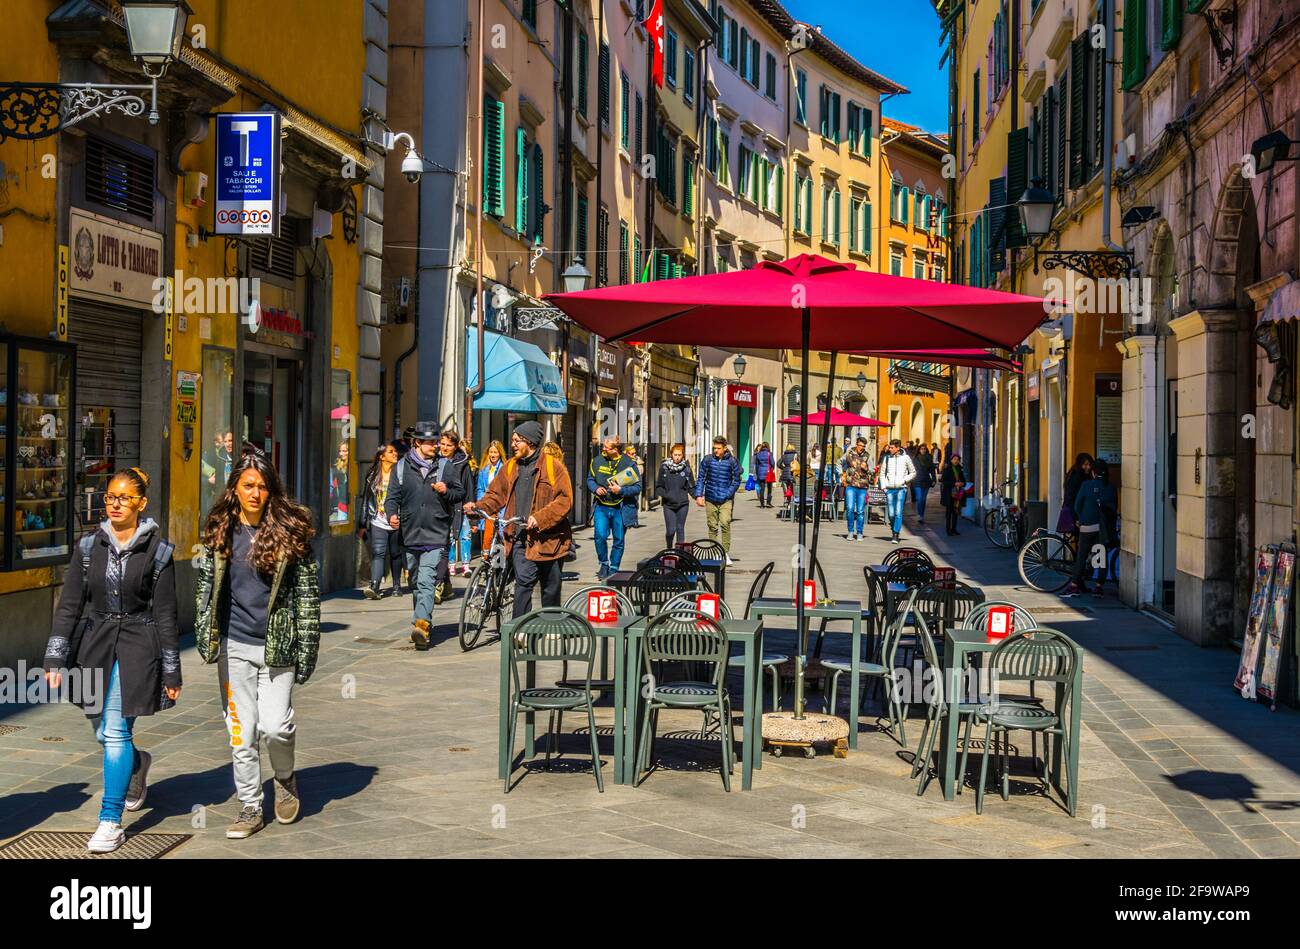 PISA, 14 MARZO 2016: La gente si gode una giornata di sole in primavera passeggiando attraverso il viale corso italia nella città italiana di Pisa. Foto Stock